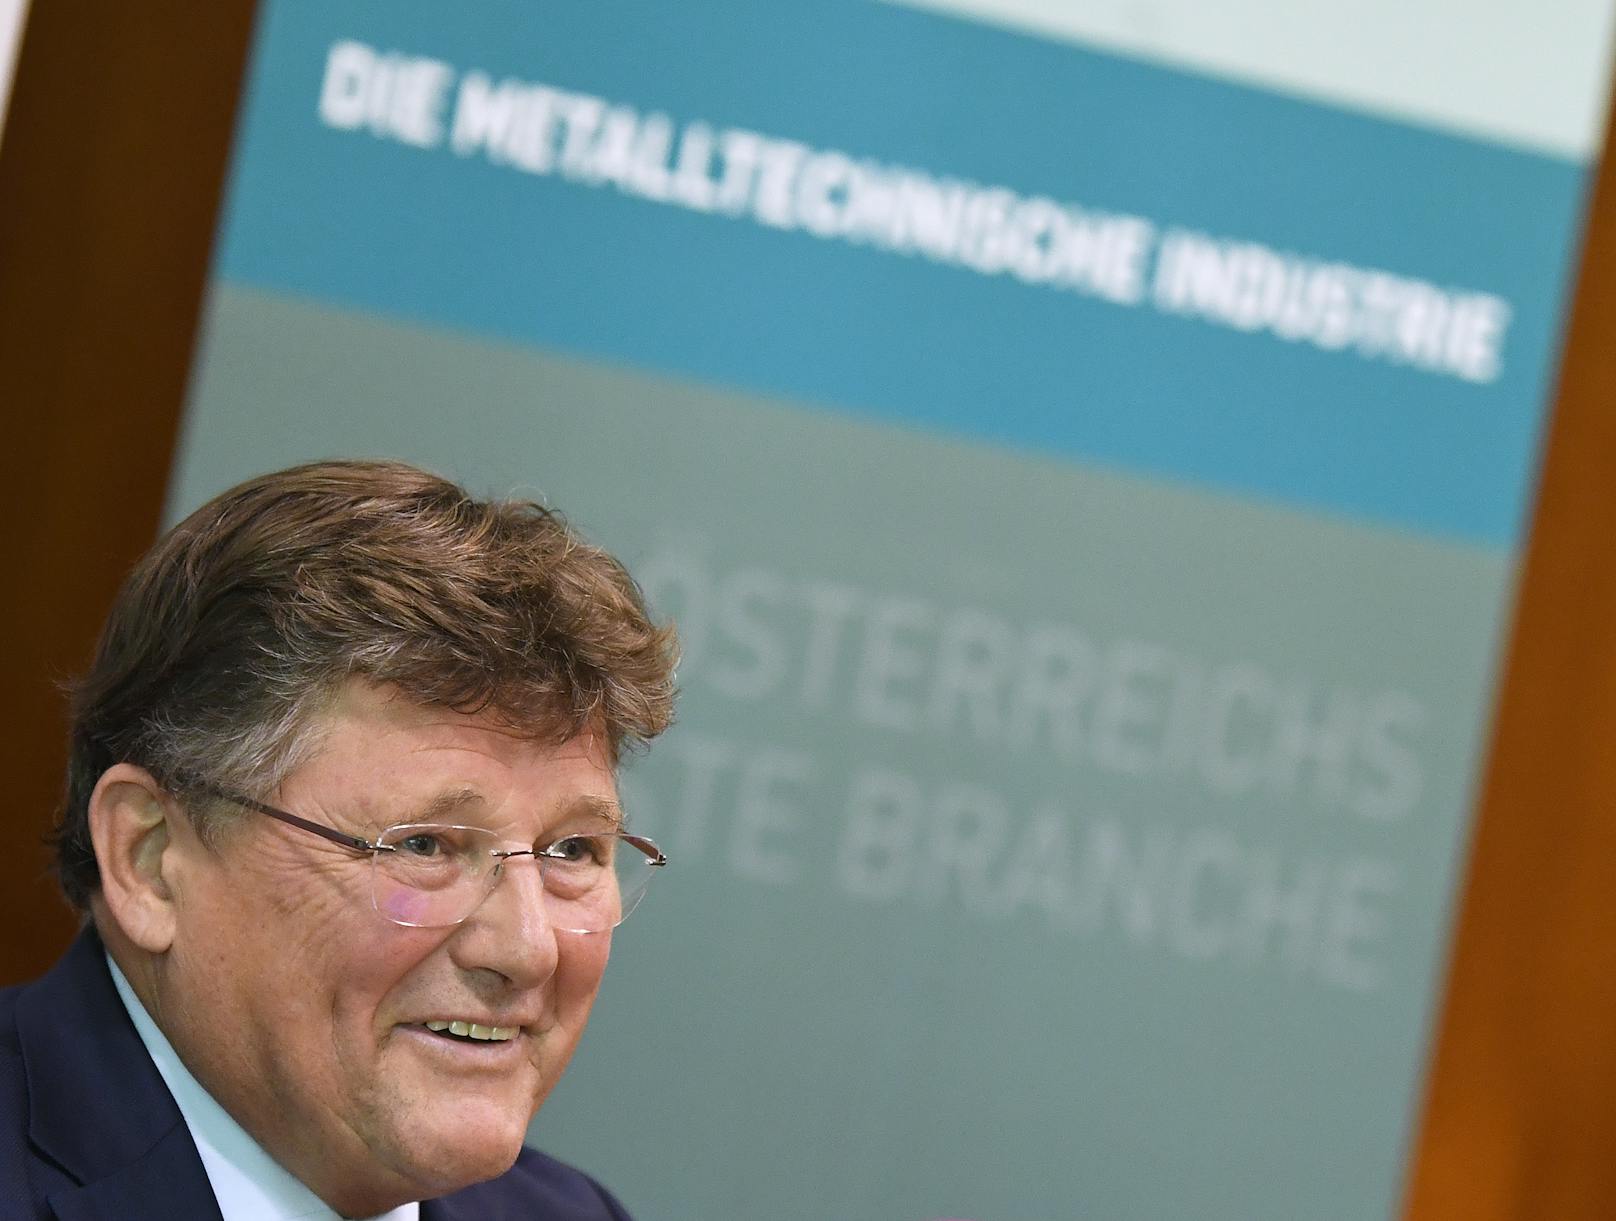 Hat leicht lachen: PRO-GE Chefverhandler Rainer Wimmer nach den Metaller-KV-Verhandlungen.